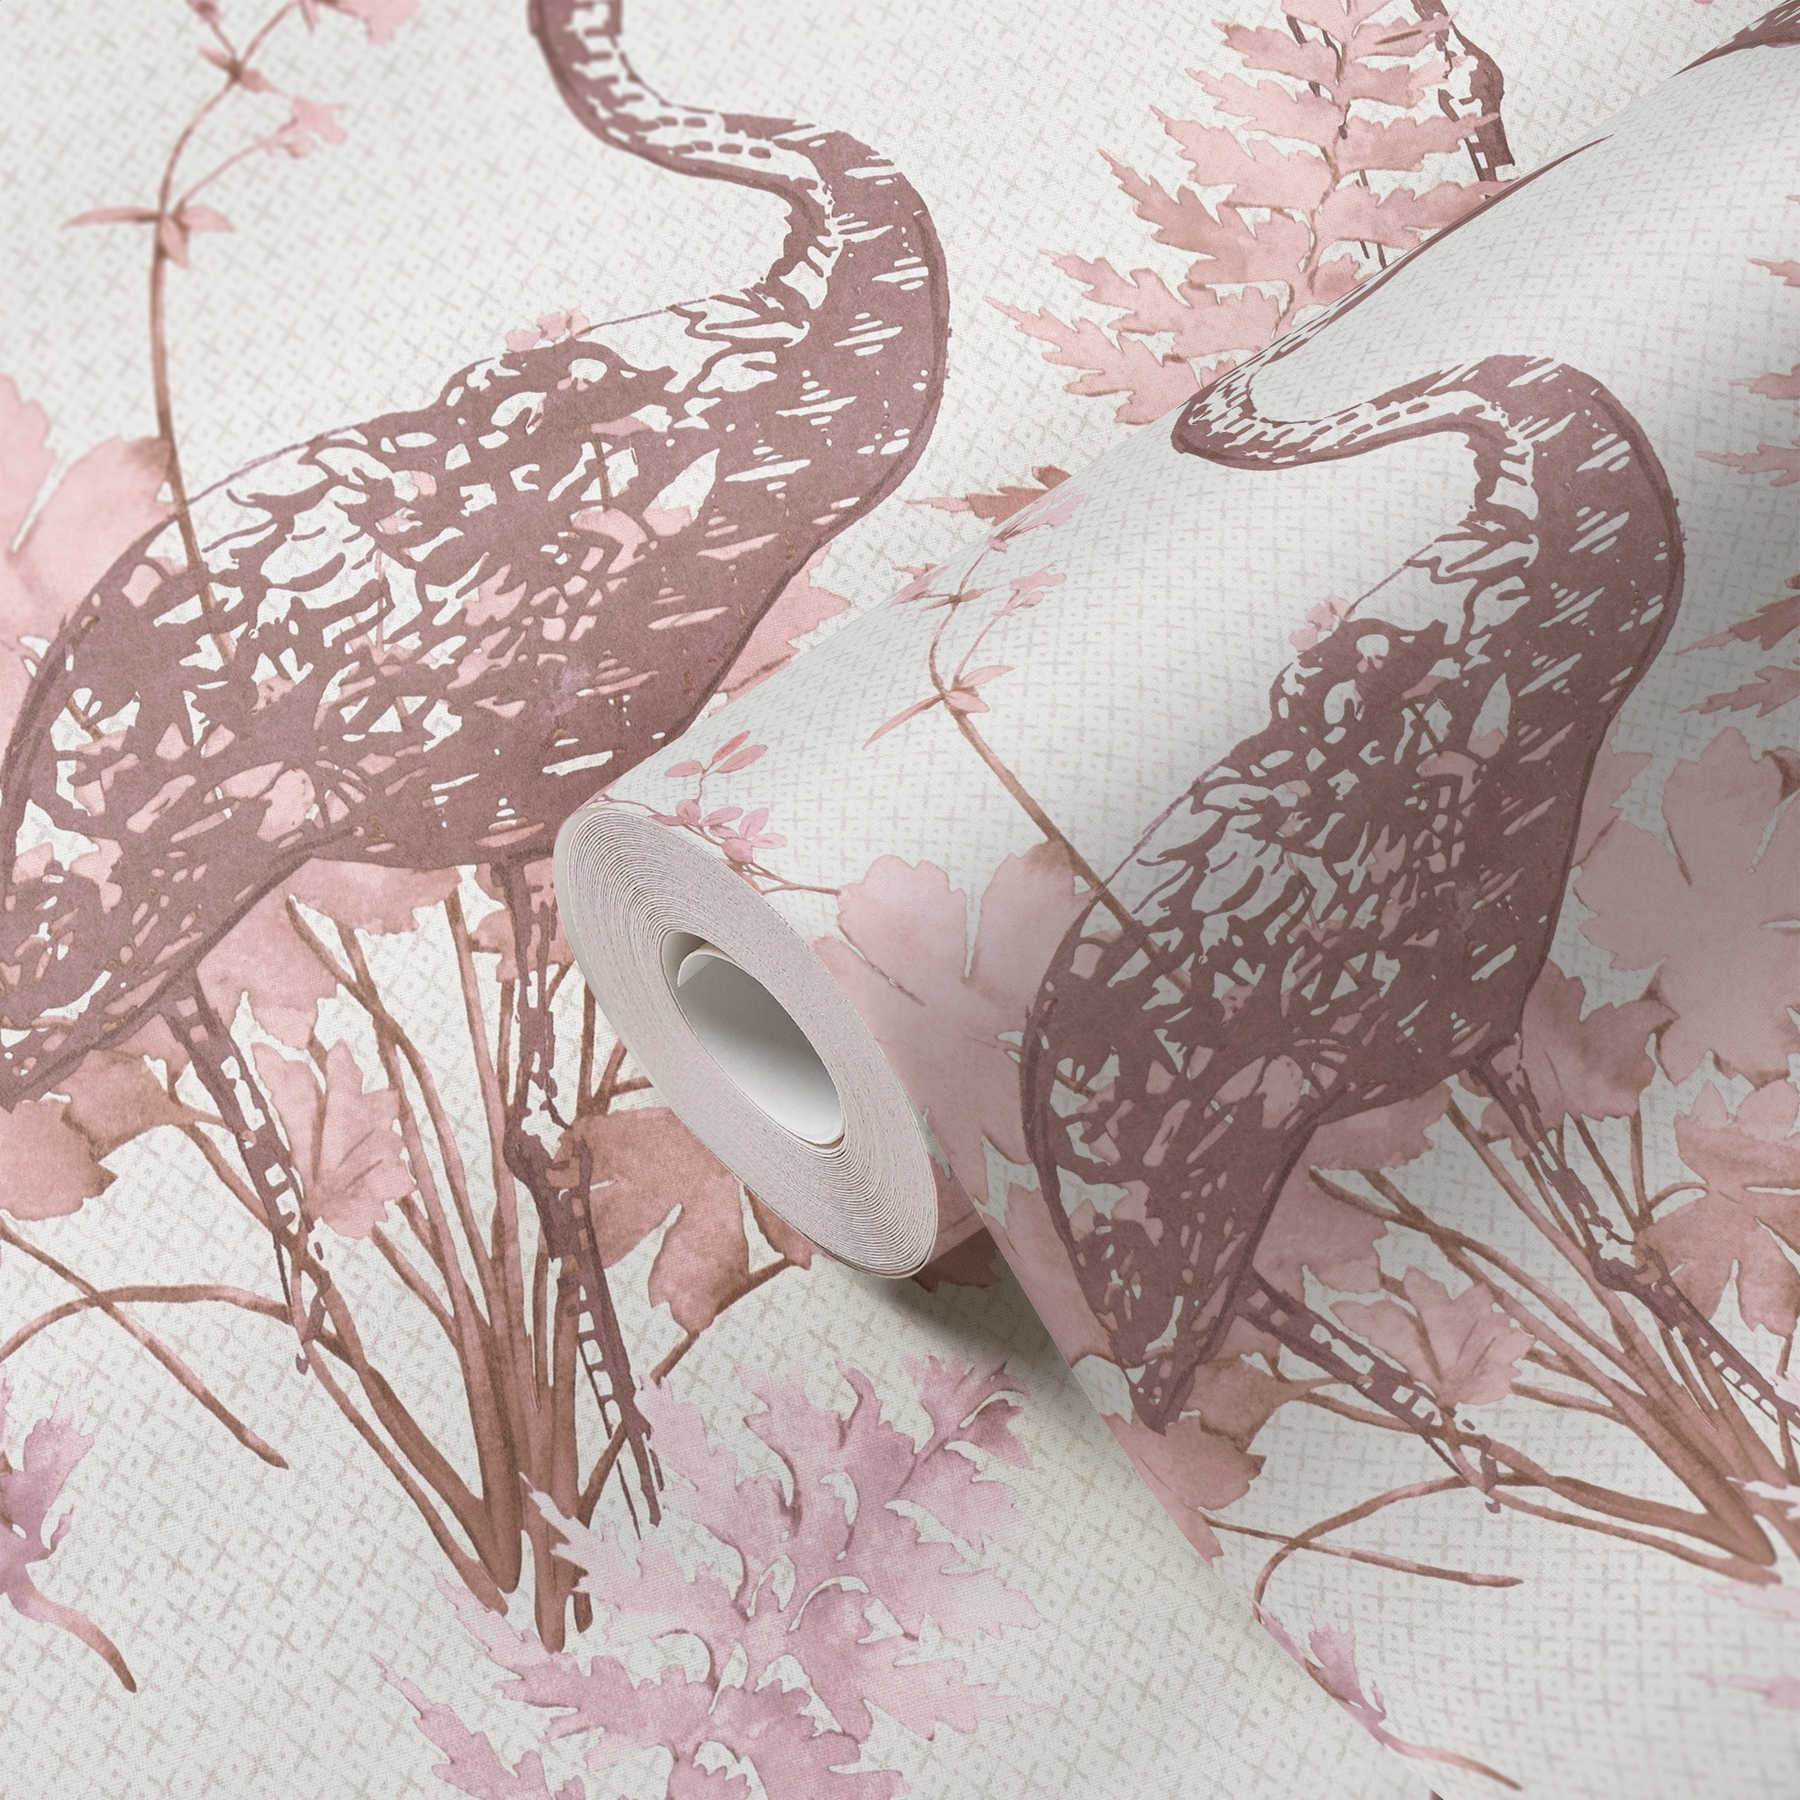             Papier peint Nature Oiseaux & Feuilles style aquarelle - beige, rose
        